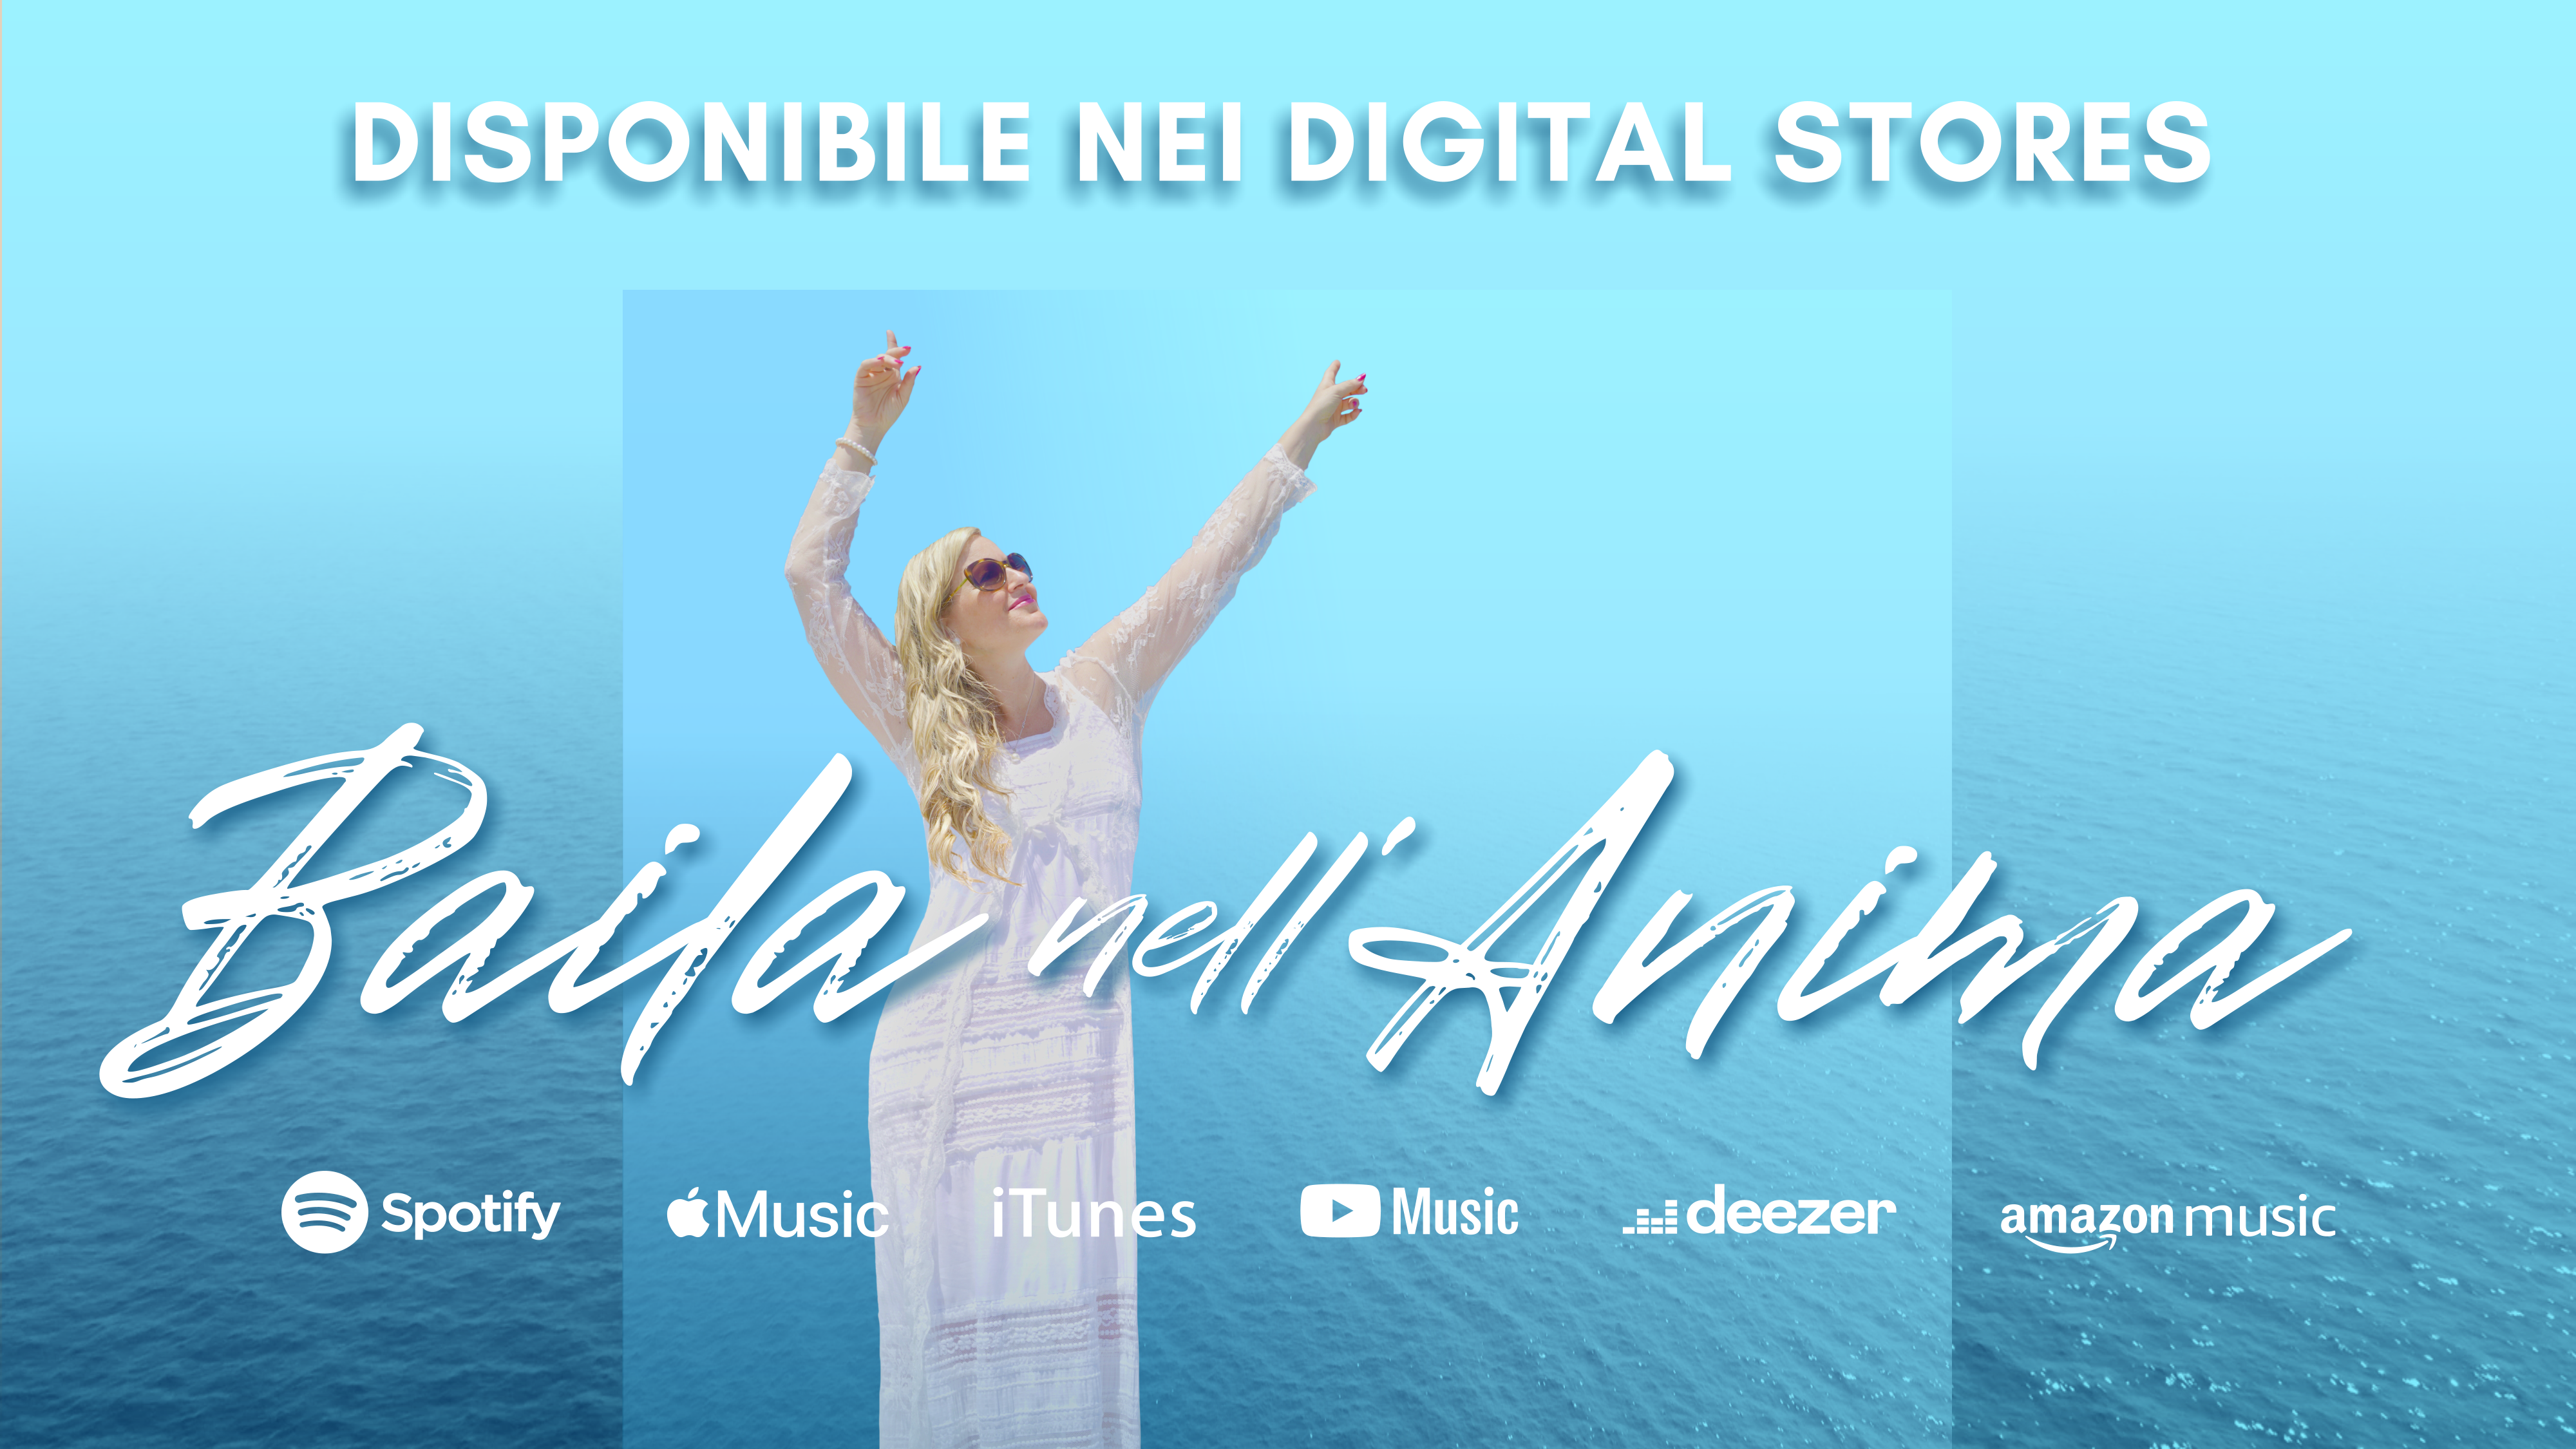 Il nuovo singolo di Mirael: "Baila nell'Anima" in uscita il 4 e 5 agosto.<br />
Il 4 agosto uscirà il singolo nei digital stores.<br />
Il 5 agosto alle ore 21:30 verrà pubblicato il video del singolo sul canale Youtube @mirael.